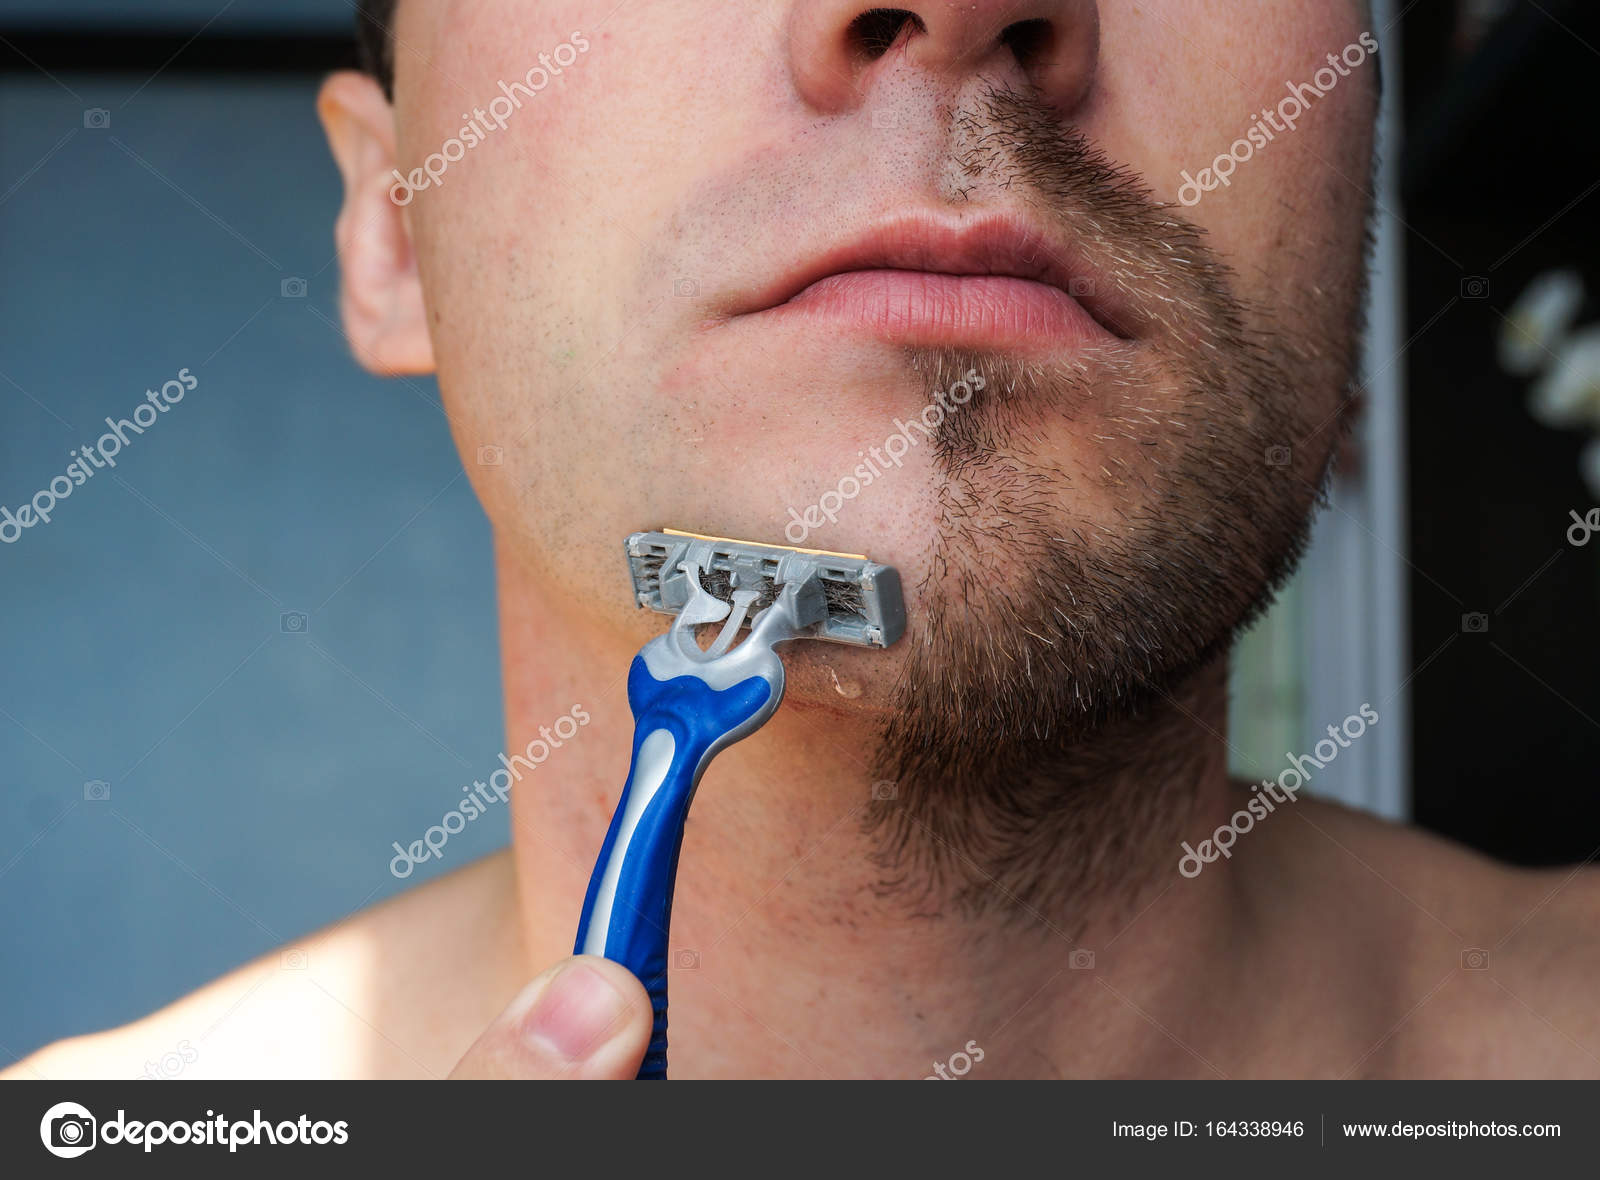 Брить по росту. Бритва для бороды одноразовая. Гладкое бритье для мужчин. Одноразовый станки для бороды. Направление бритья.